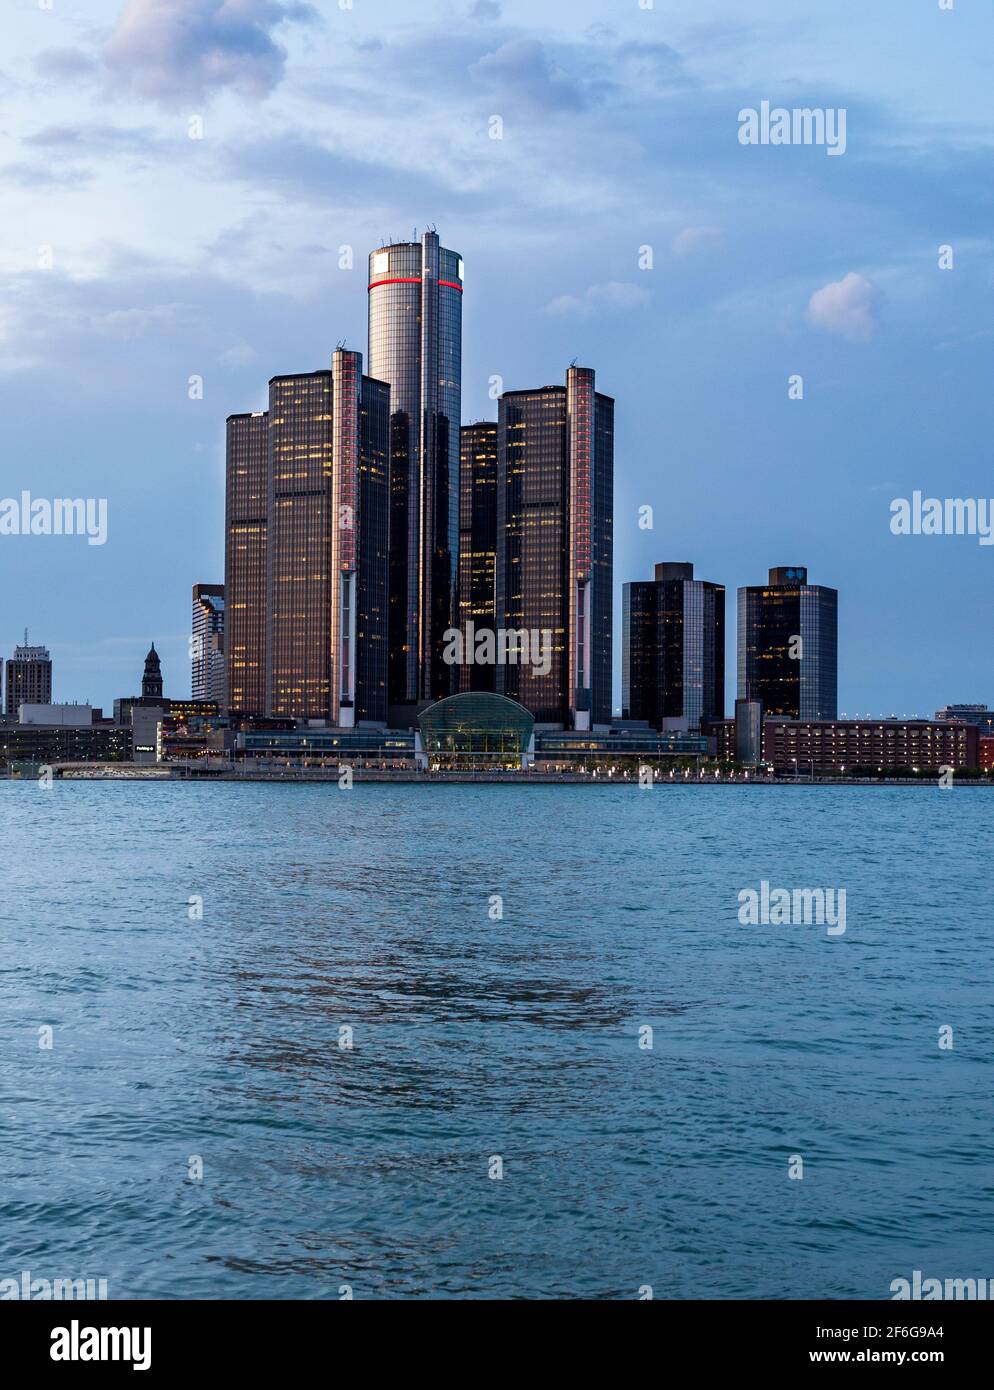 Feux allumés au Renaissance Centre de Detroit : après le coucher du soleil, les hauts bâtiments du Renaissance Centre dominés par la tour GM de Detroit commencent à s'allumer. Rivière Detroit en premier plan. Banque D'Images